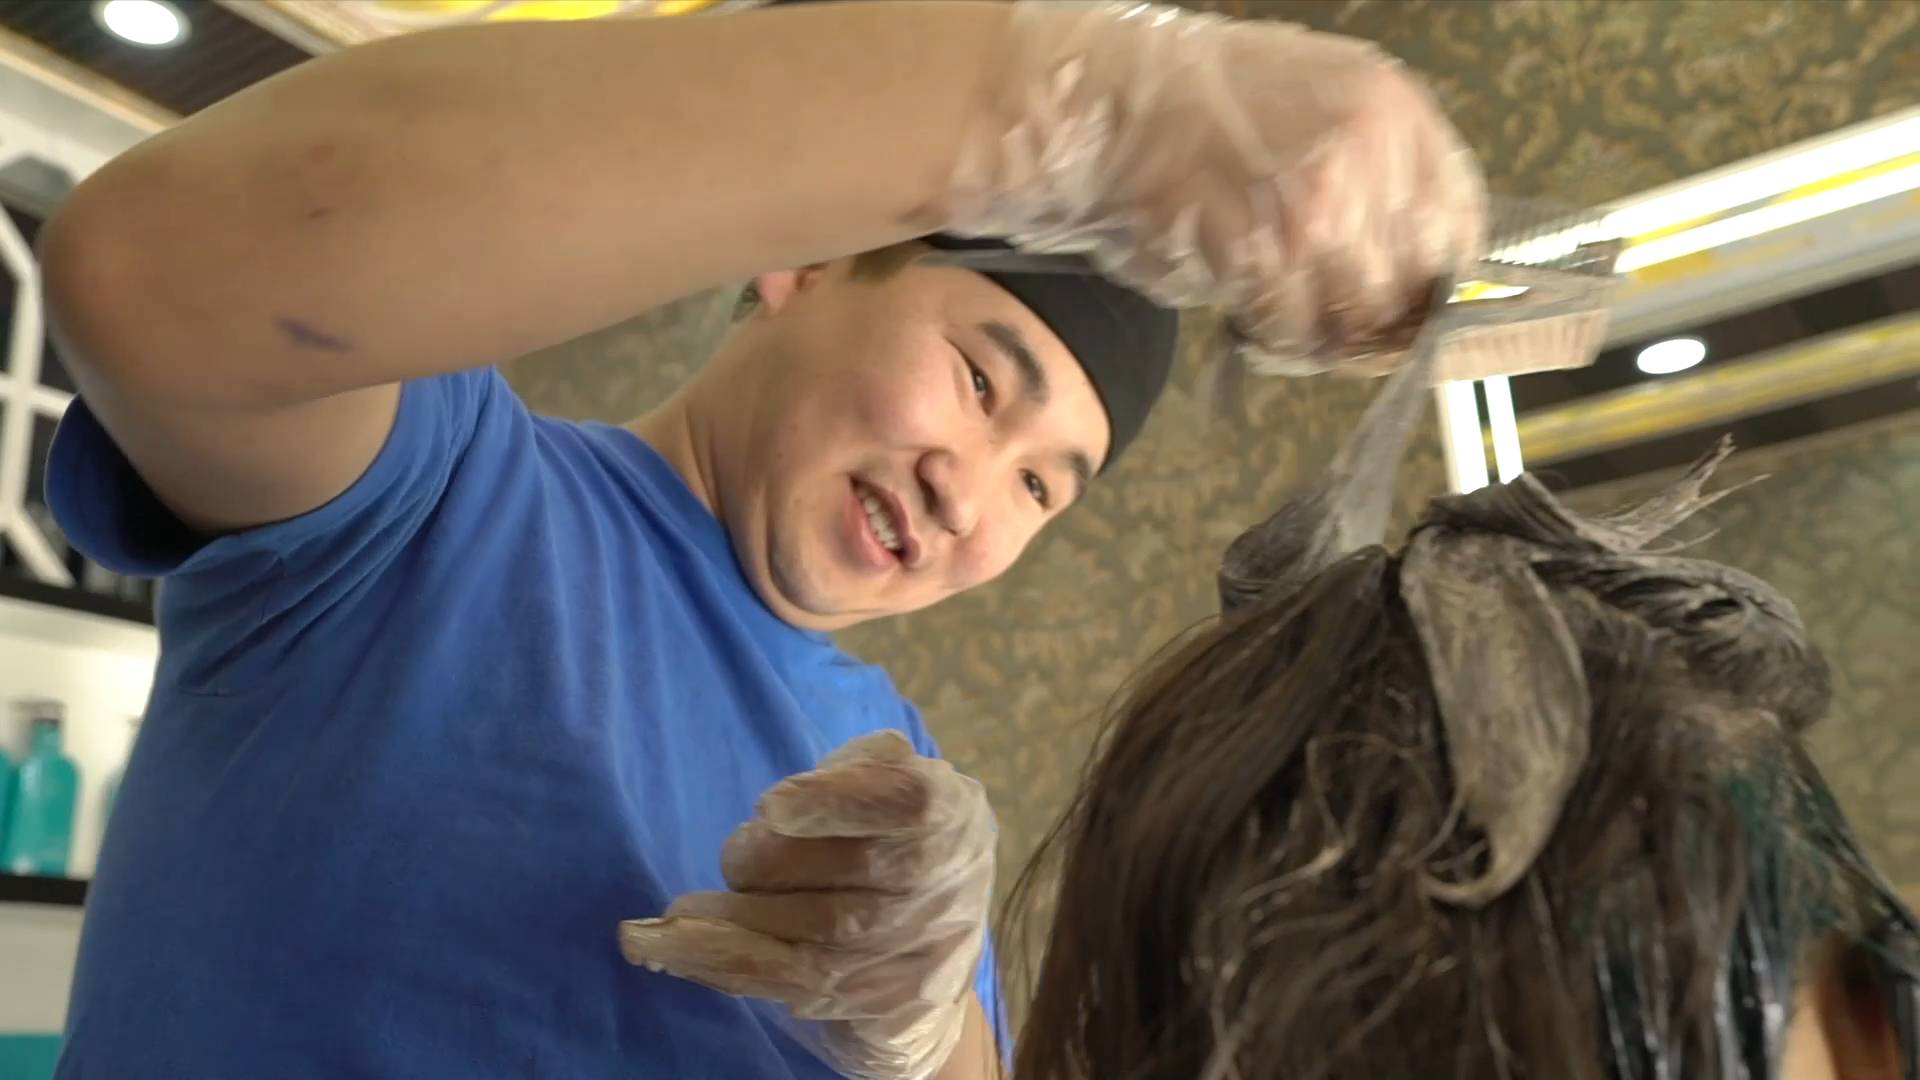 GLOBALink | Xinjiang, My home: Hairdresser Tasken